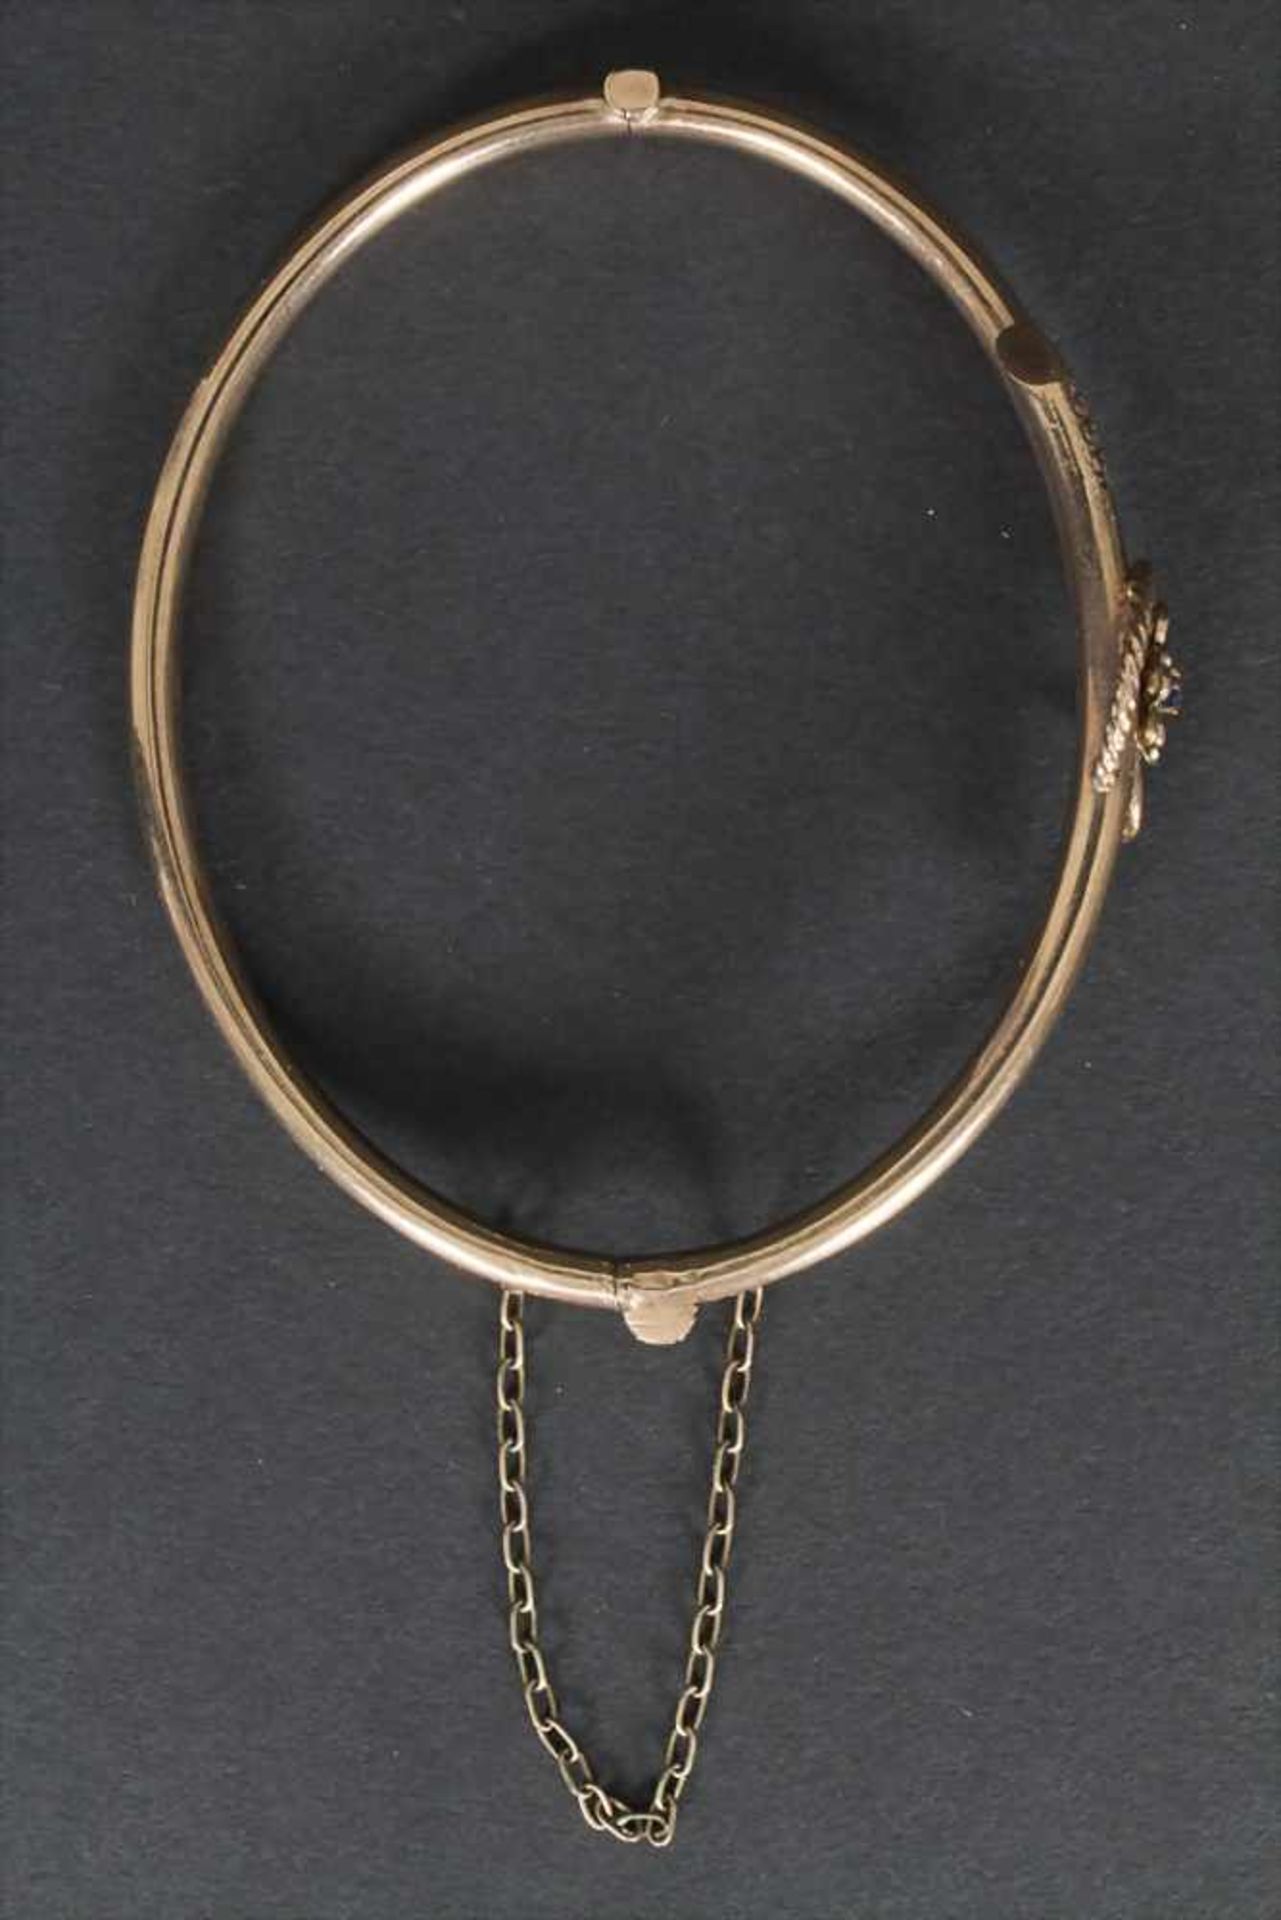 Armreif / A bracelet, 19 Jh.Material: 8 kt 333/000 Gold, FlußperlenMaße: D. 6,7 cm, Gewicht: 6,7 g, - Bild 4 aus 5